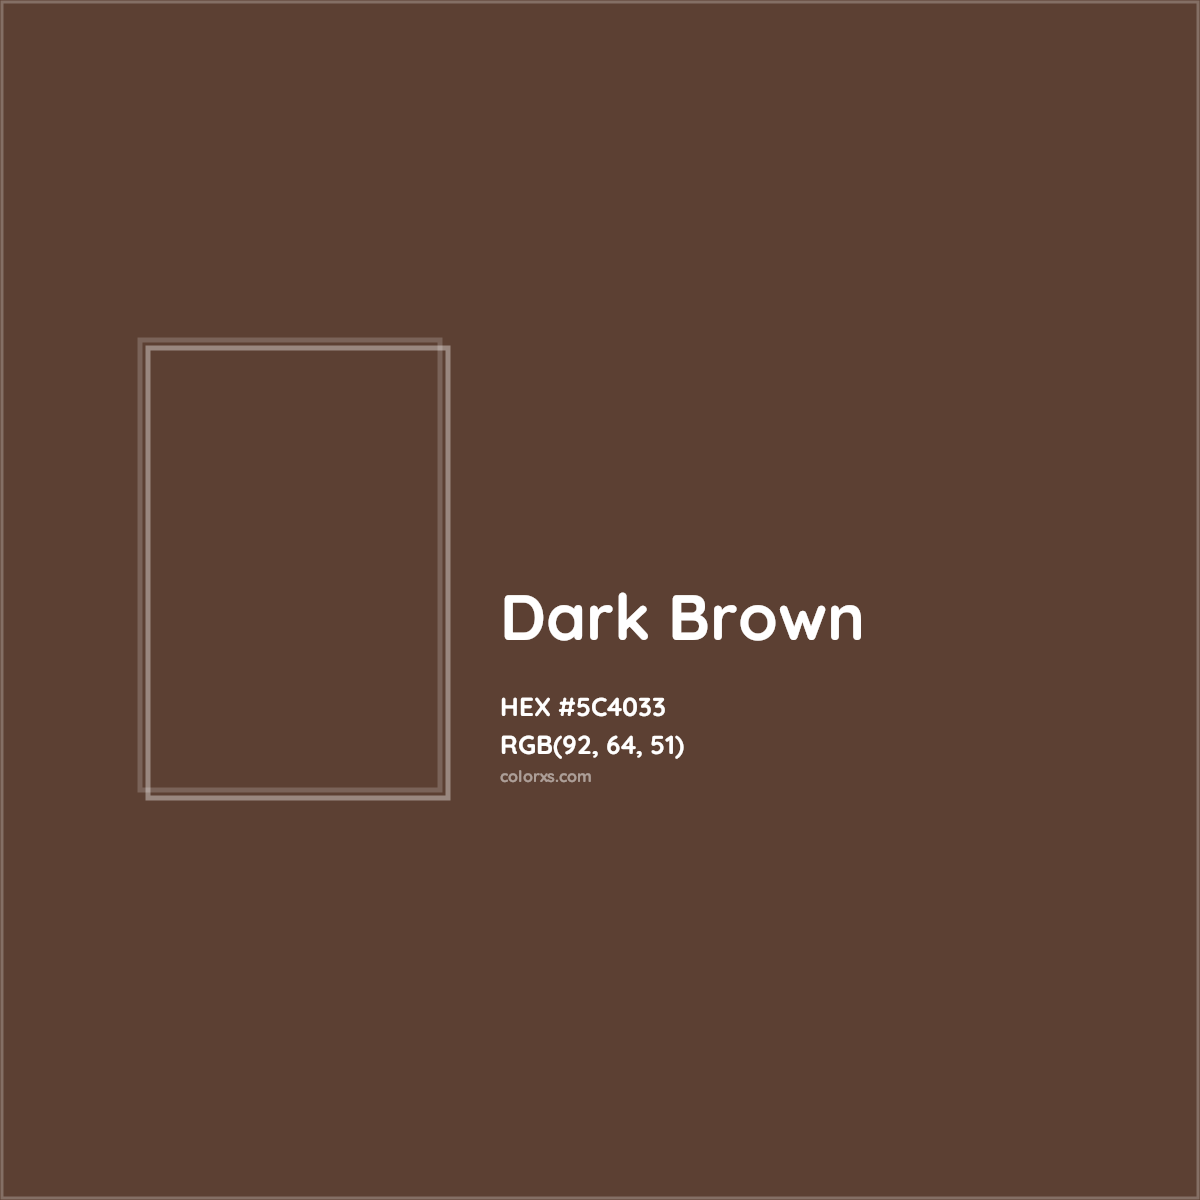 HEX #5C4033 Dark Brown Color - Color Code